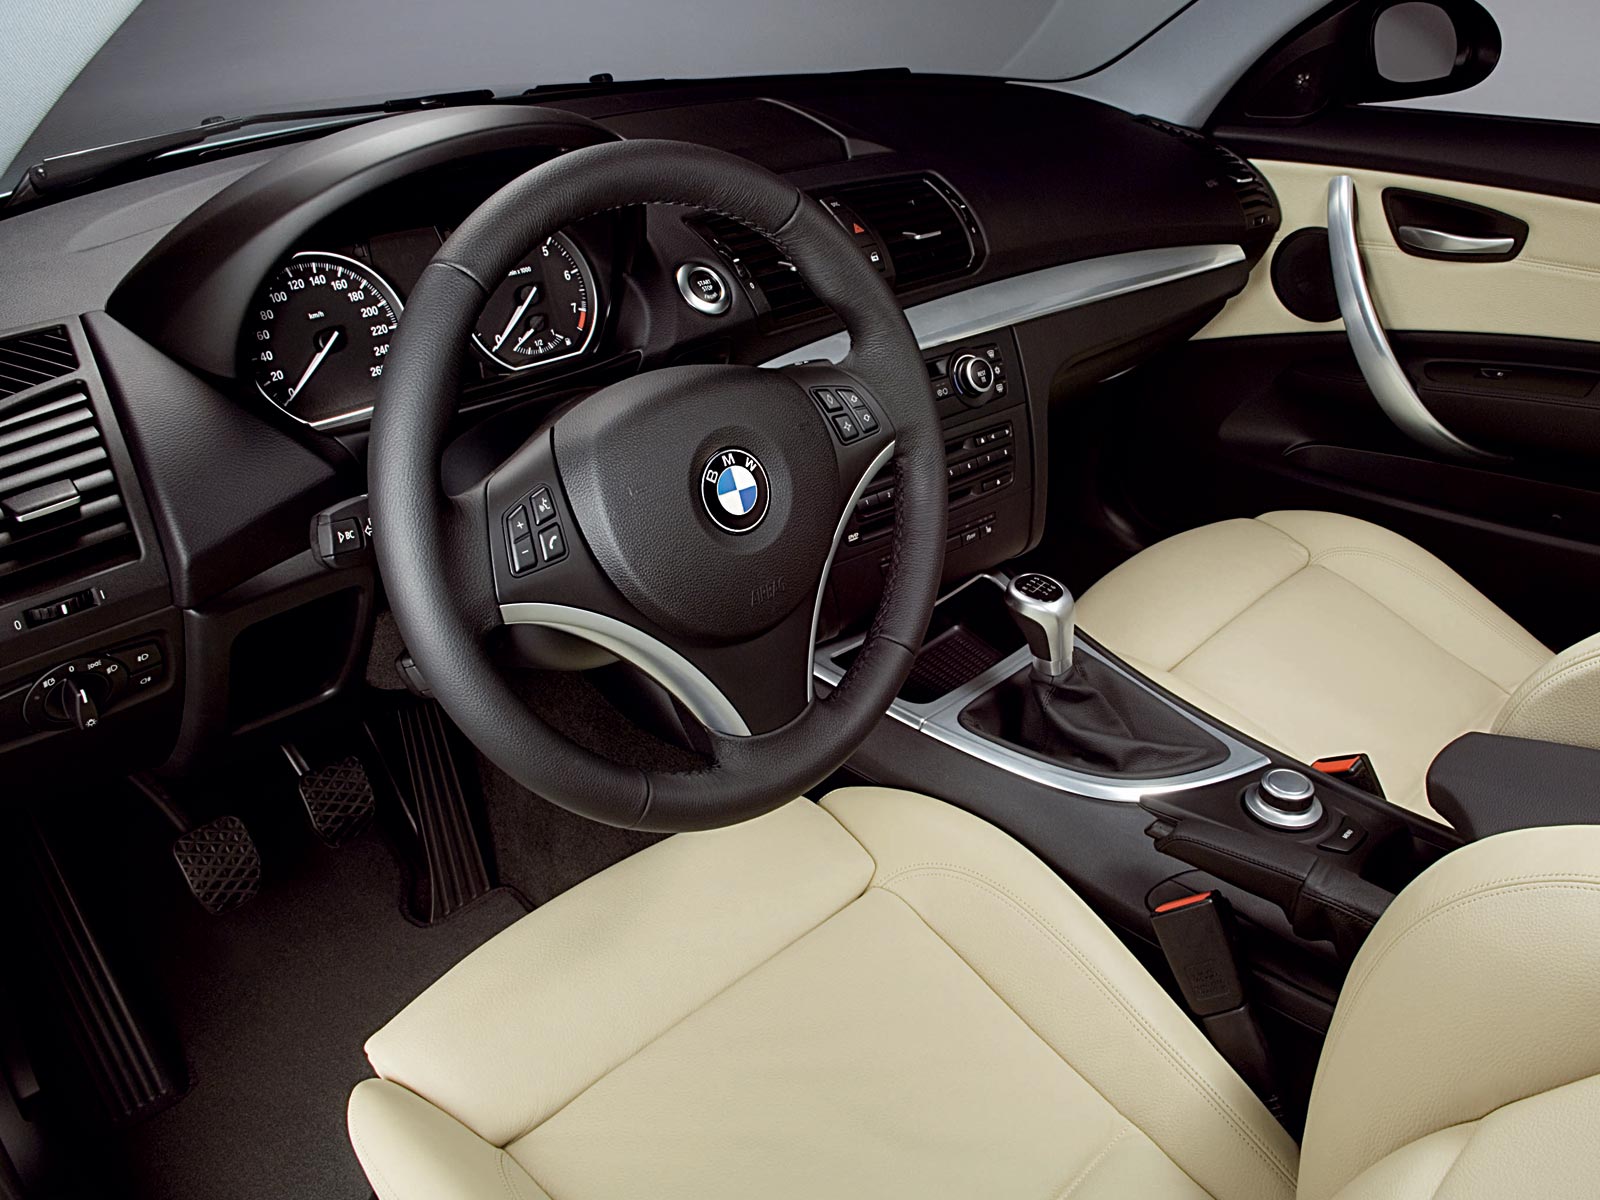 2010 BMW 1er Reihe (c) BMW